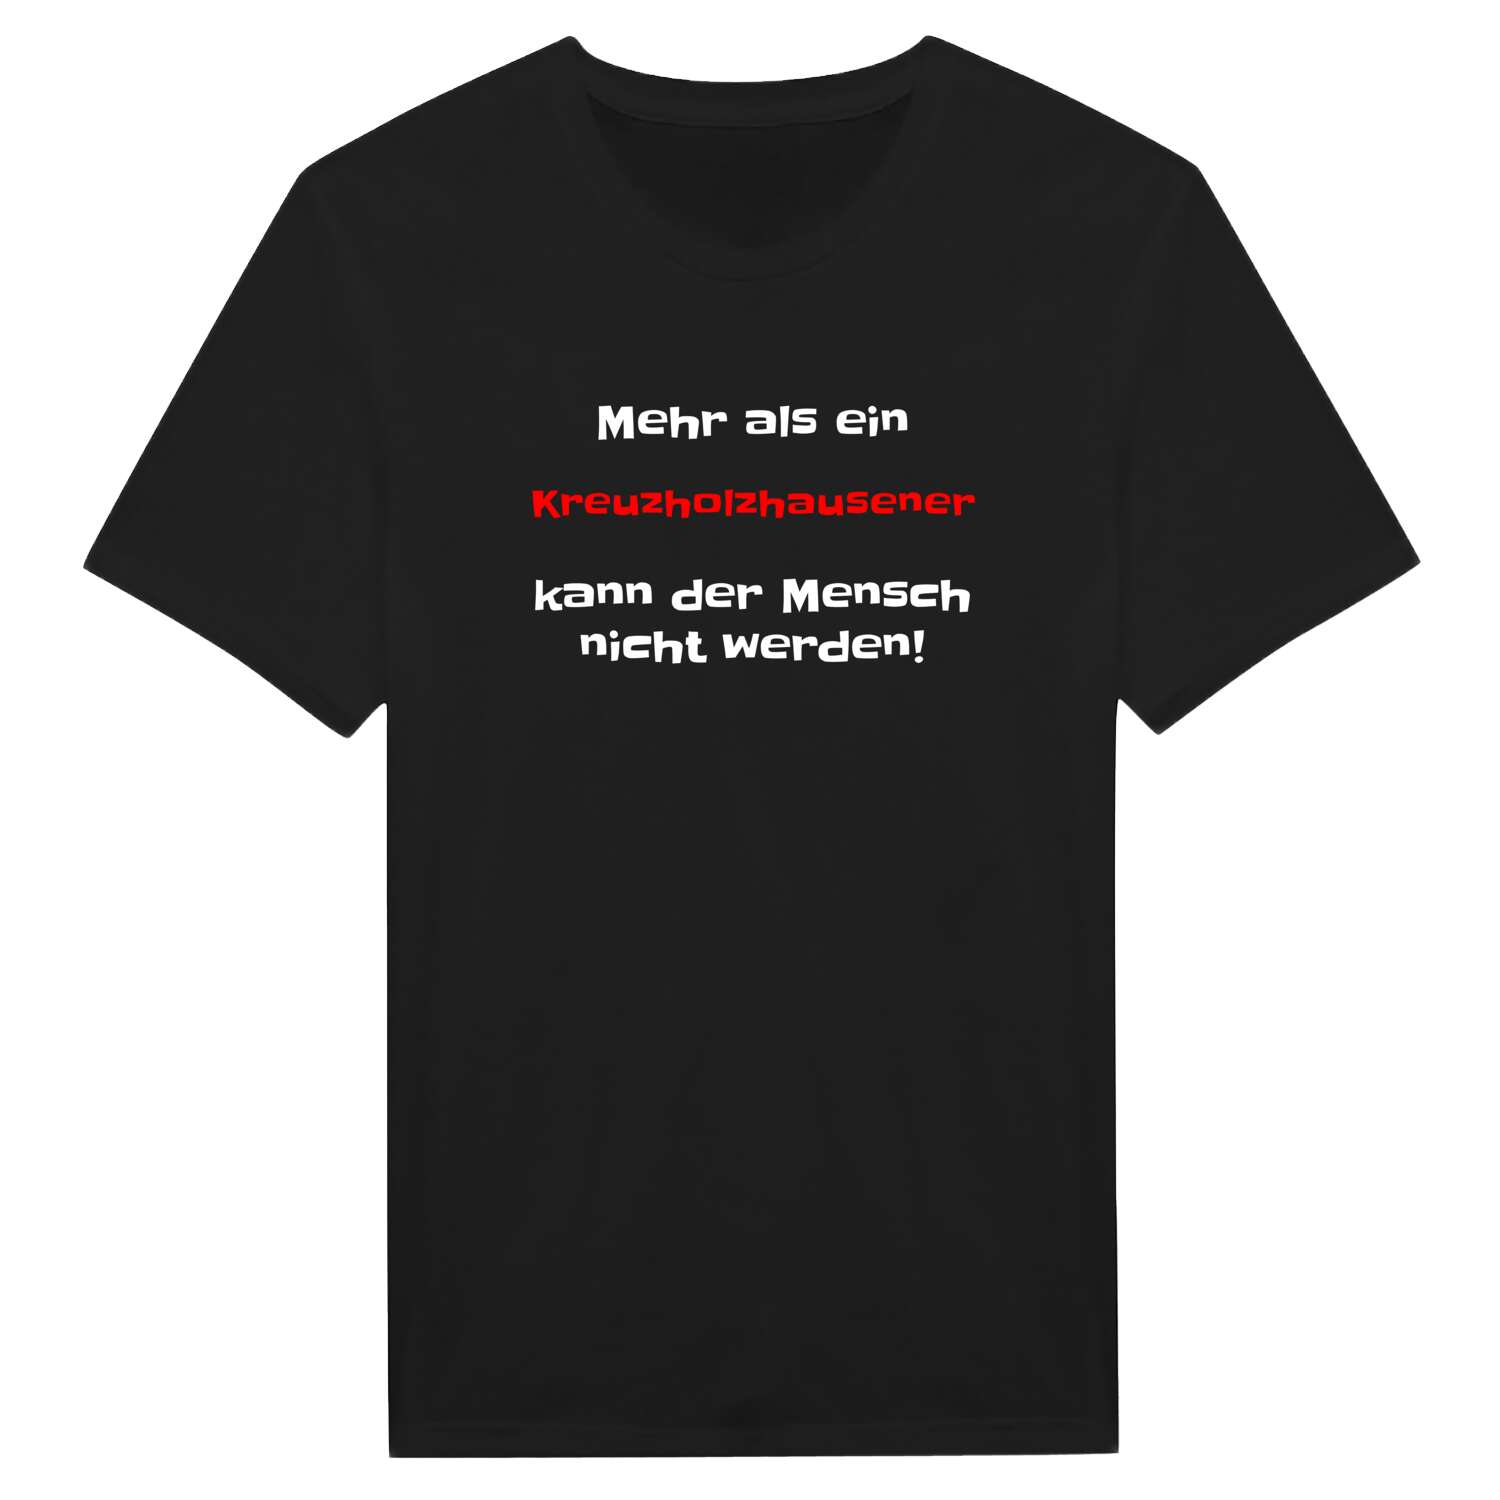 Kreuzholzhausen T-Shirt »Mehr als ein«